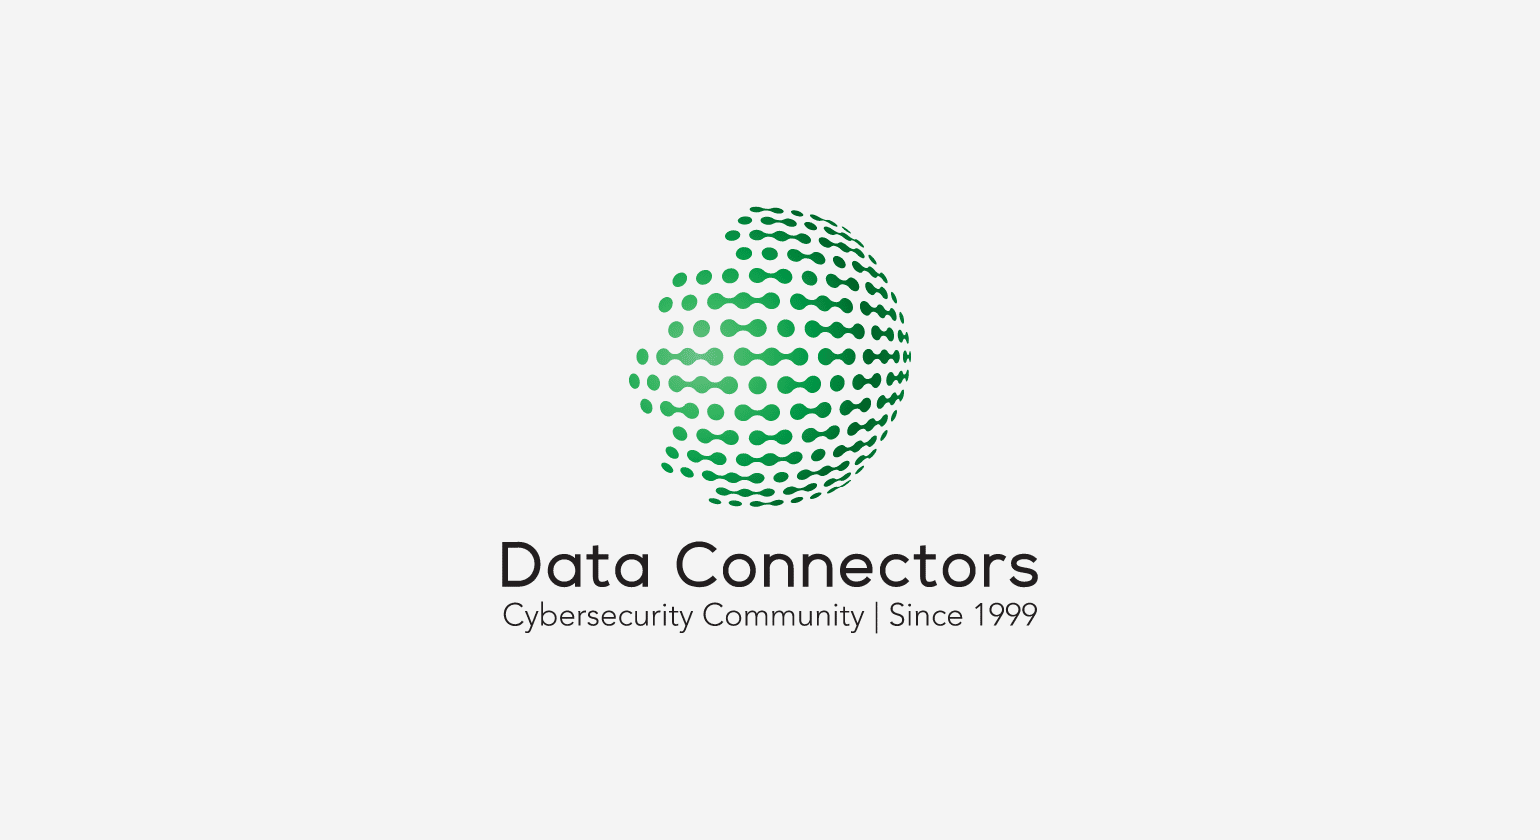 Data Connectors